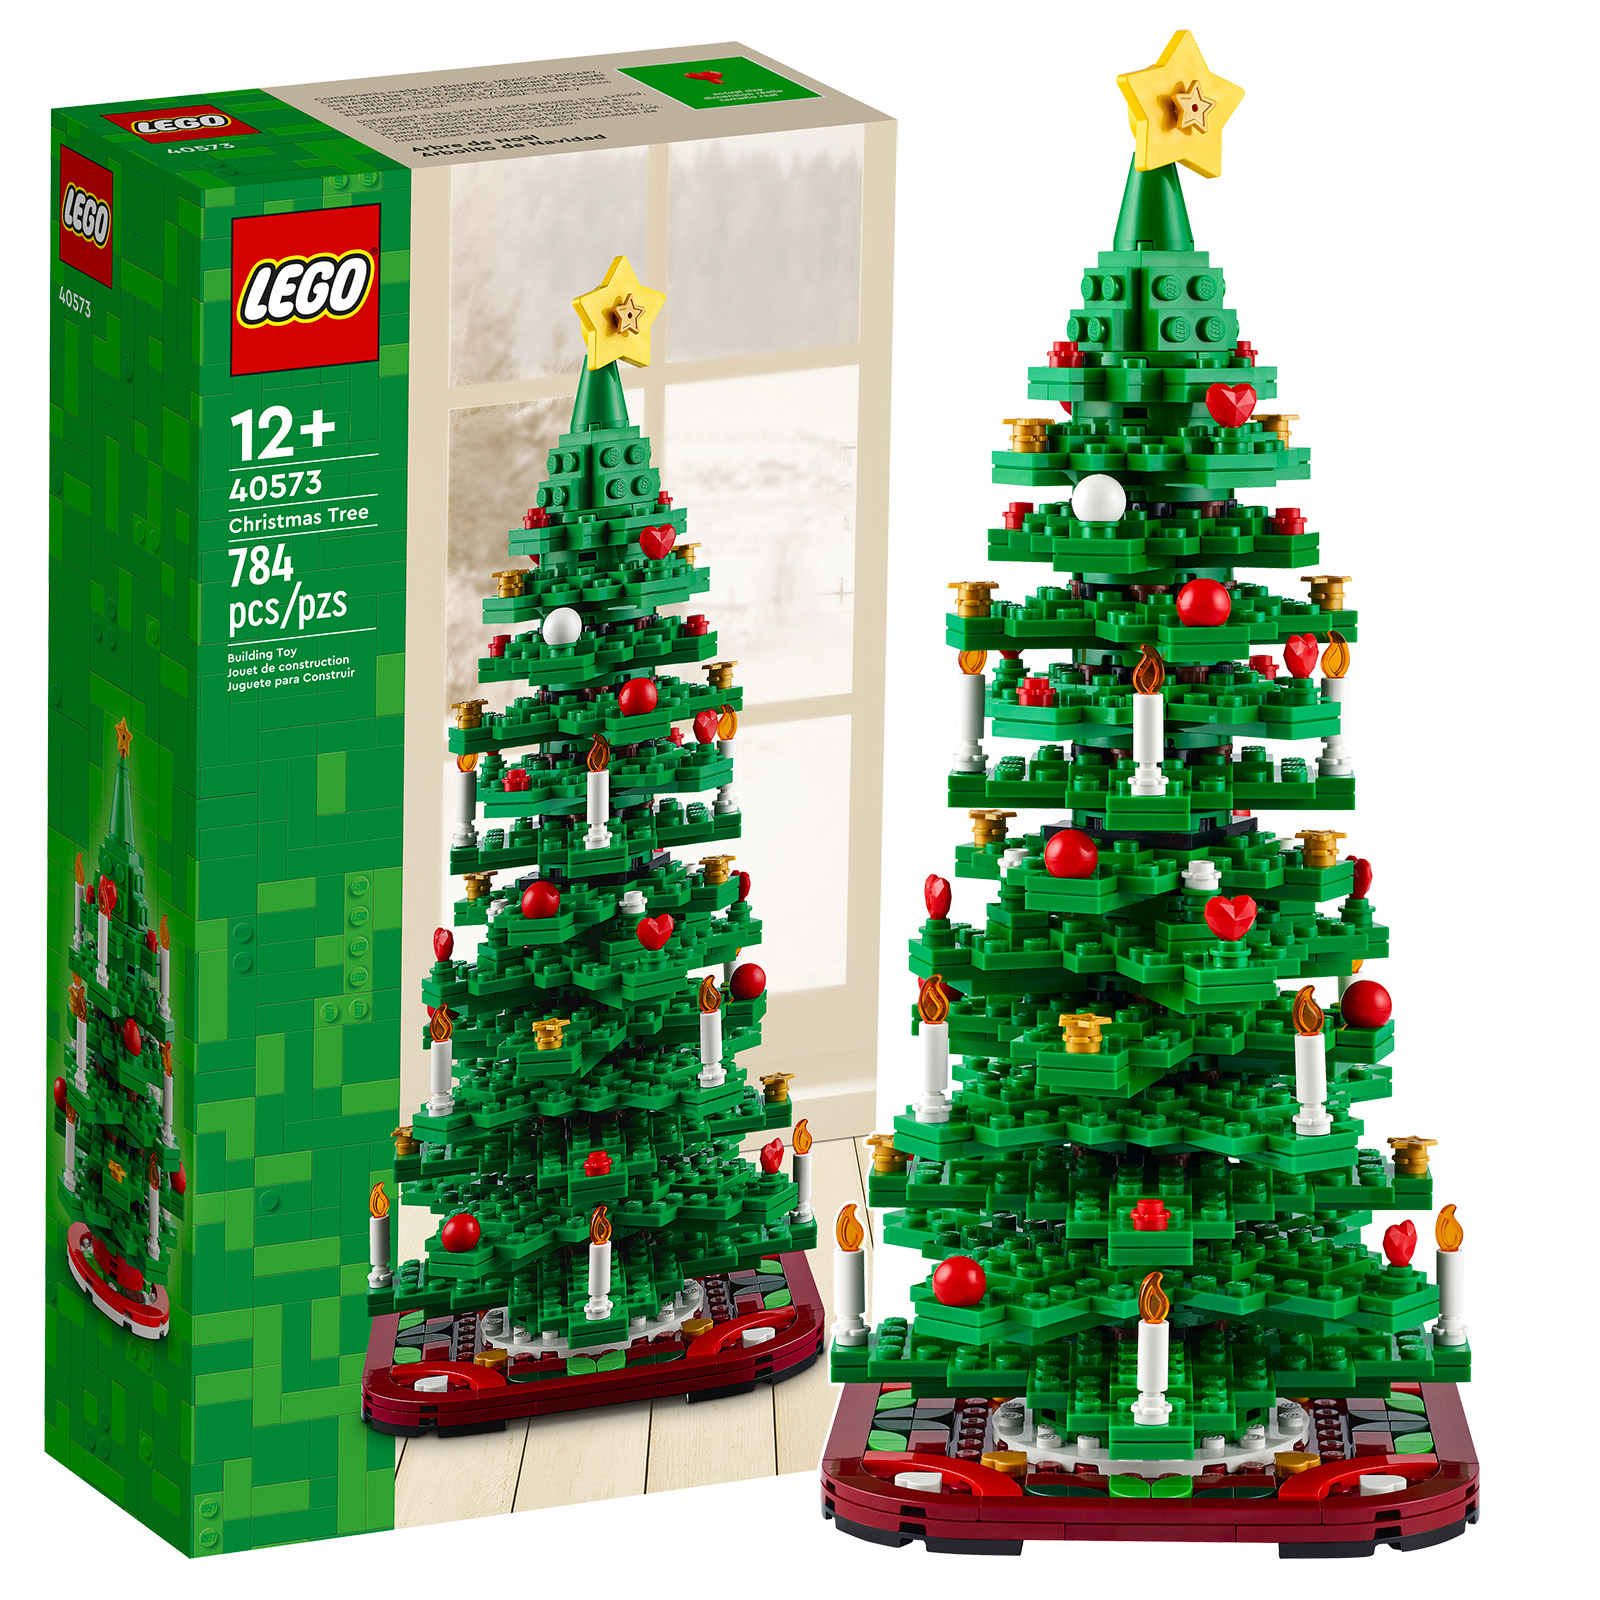 40573 LEGO Seasonal Christmas Tree 2in1 - Đồ chơi xếp hình cây thông 2trong1